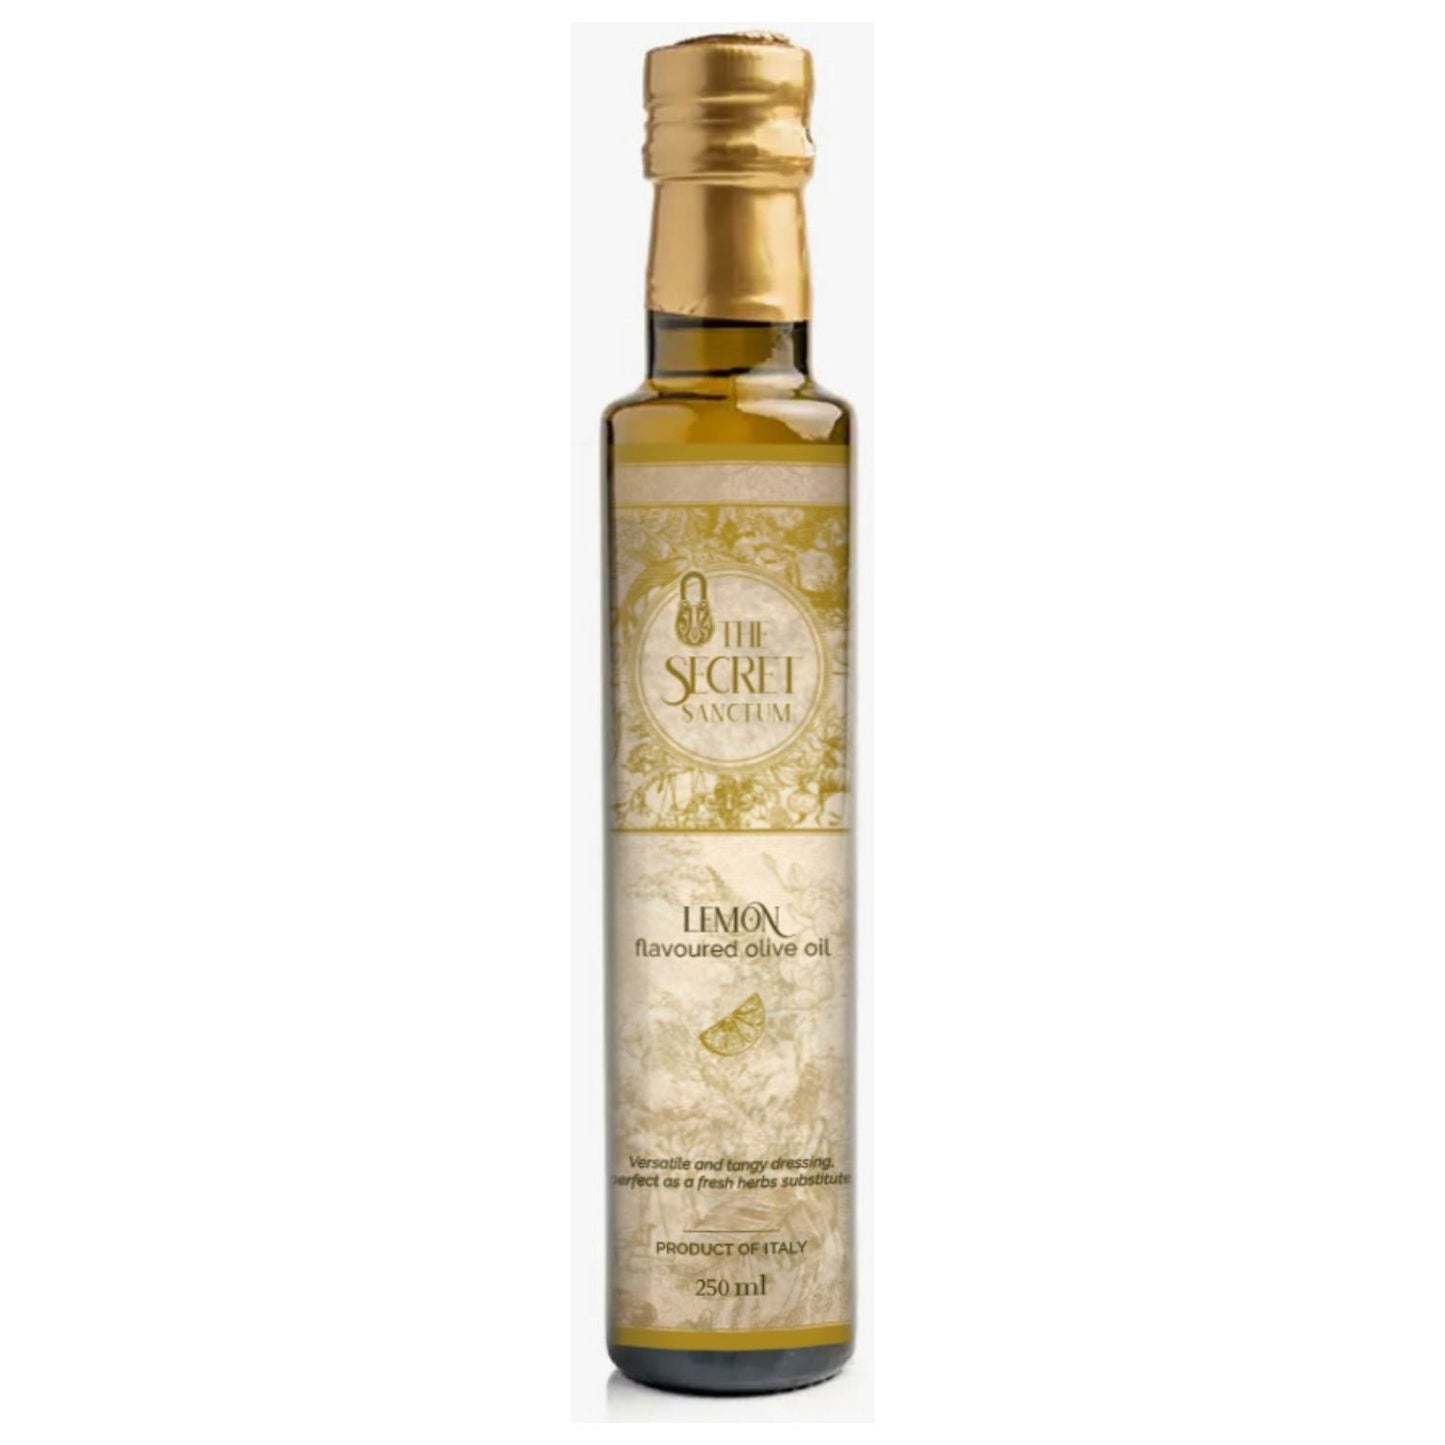 TSS LEMON flavoured olive oil 250 ml - Elegant